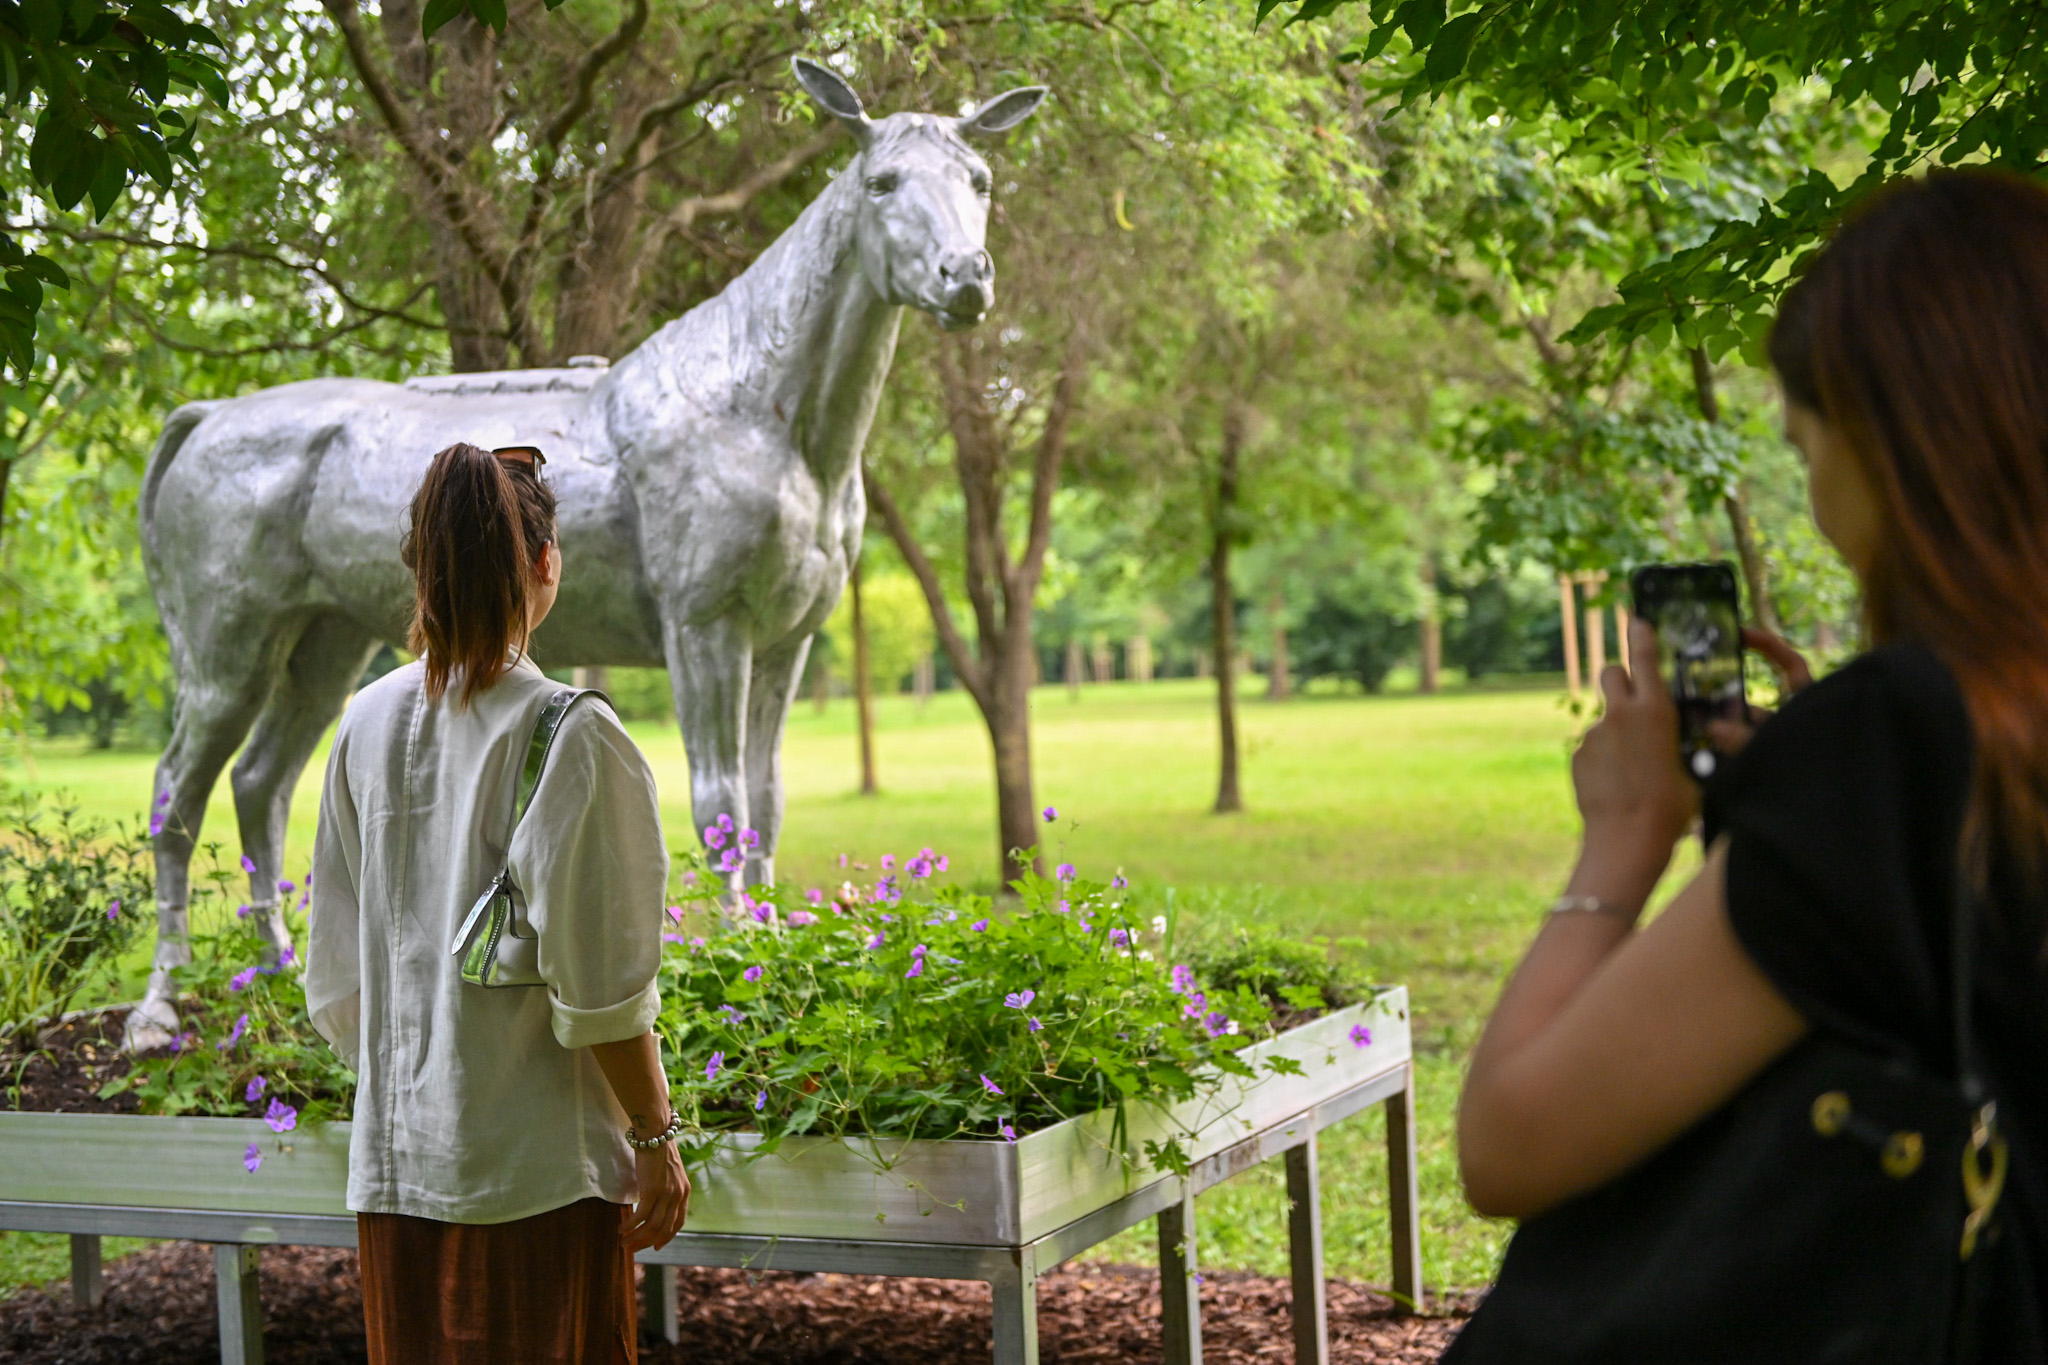 “Horse Power” di Nico Vascellari: un’altra perla nel Parco di Villa Fürstenberg